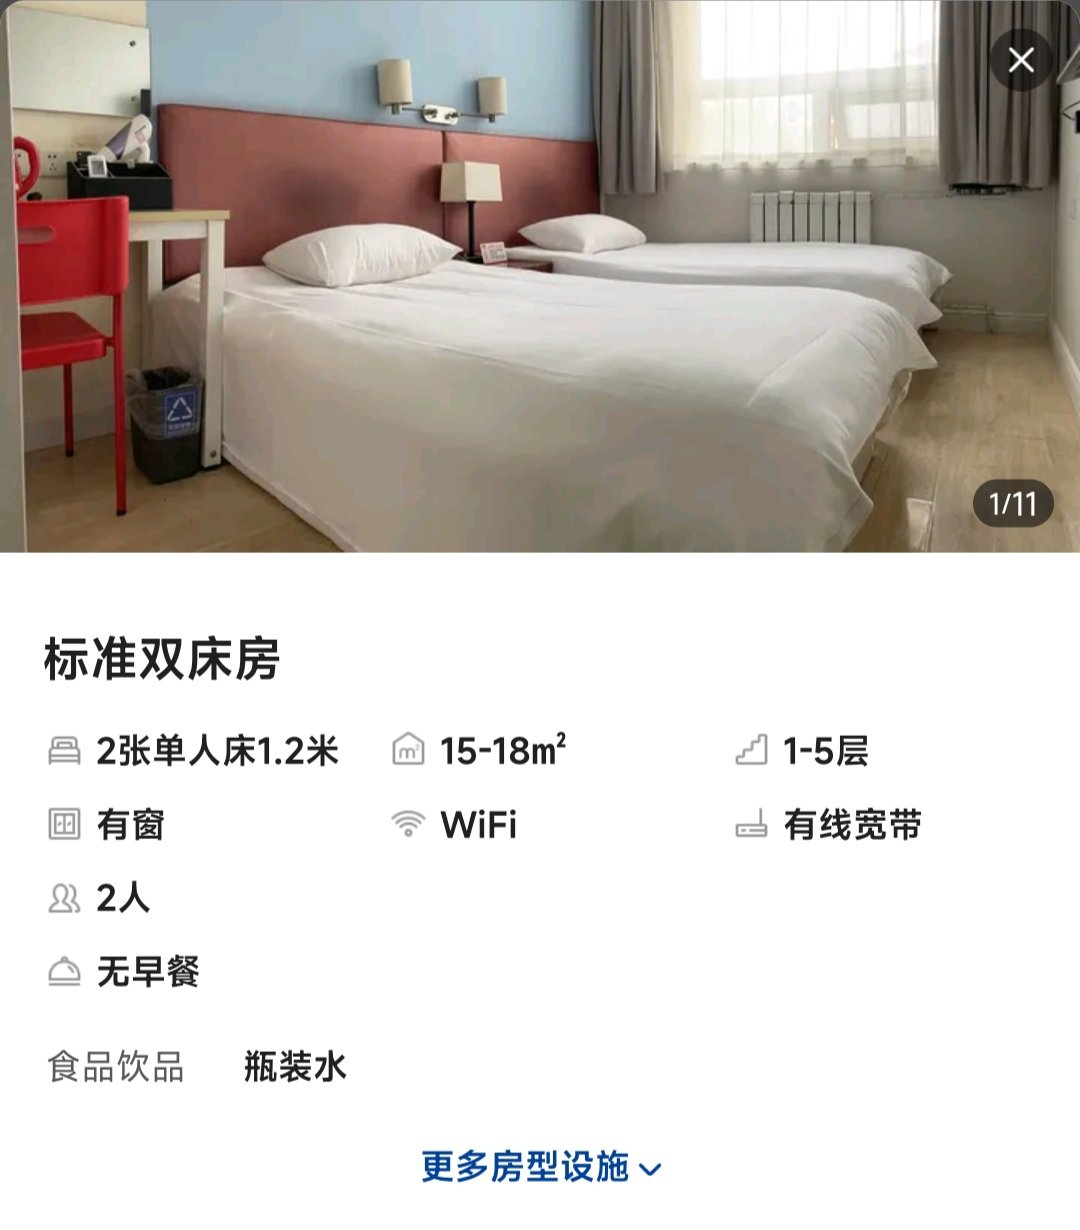 ▲北京东城区某酒店标准双床房信息。